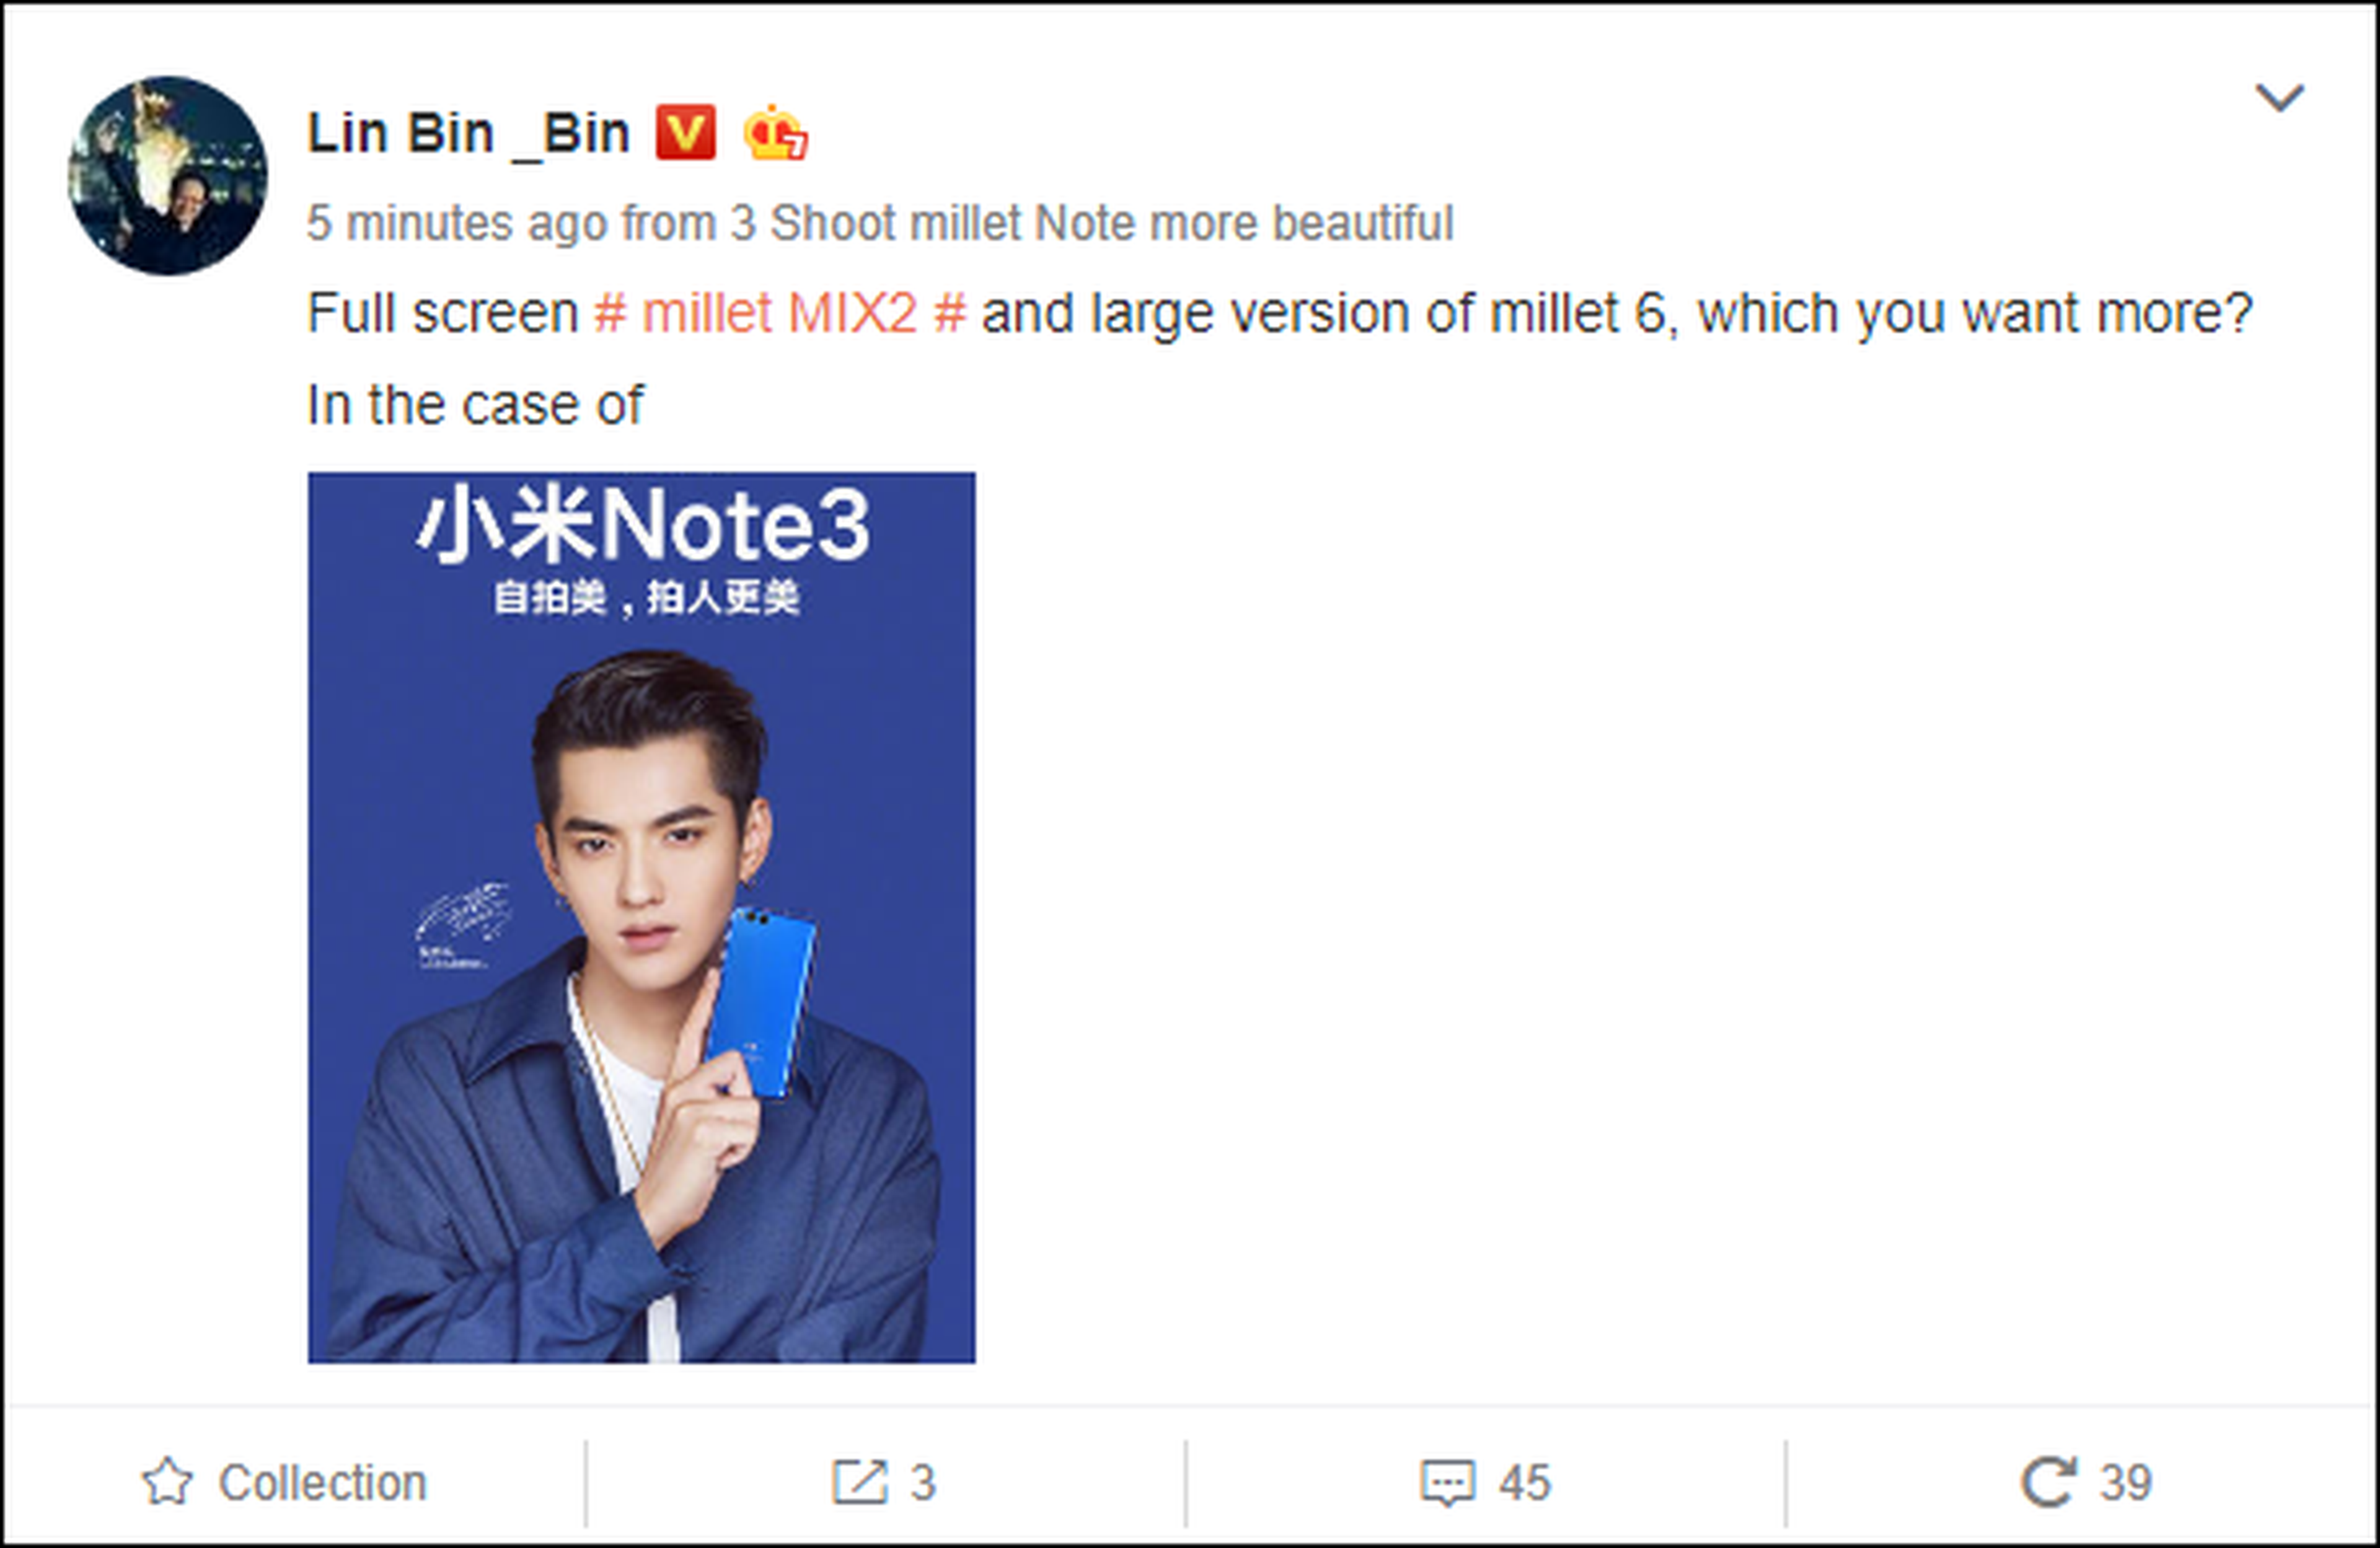 Lin Bin confrima el Xiaomi Mi Niote 3